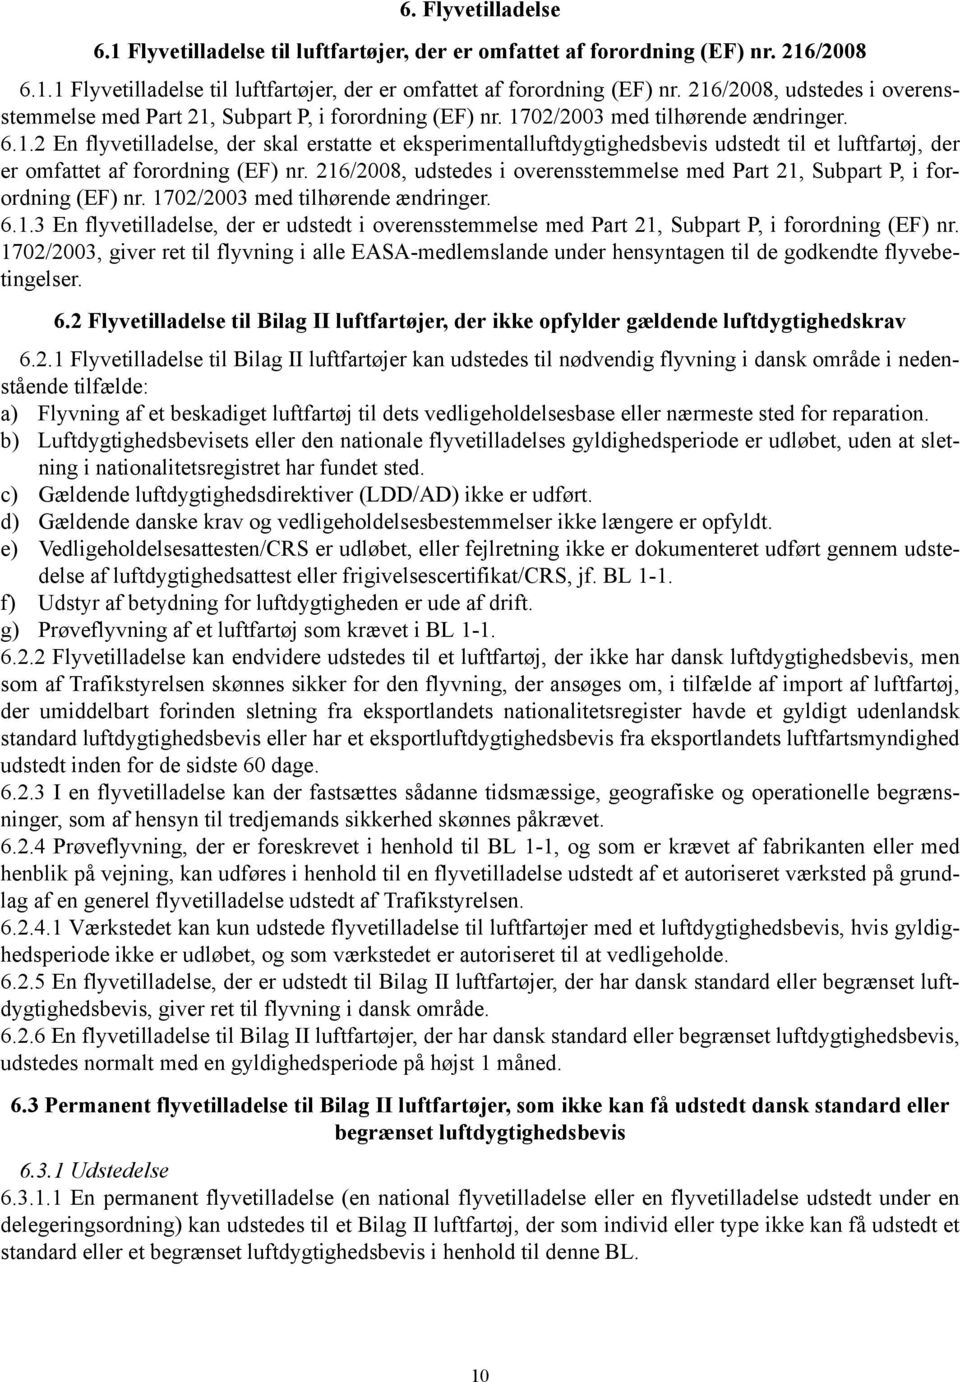 216/2008, udstedes i overensstemmelse med Part 21, Subpart P, i forordning (EF) nr. 1702/2003 med tilhørende ændringer. 6.1.3 En flyvetilladelse, der er udstedt i overensstemmelse med Part 21, Subpart P, i forordning (EF) nr.